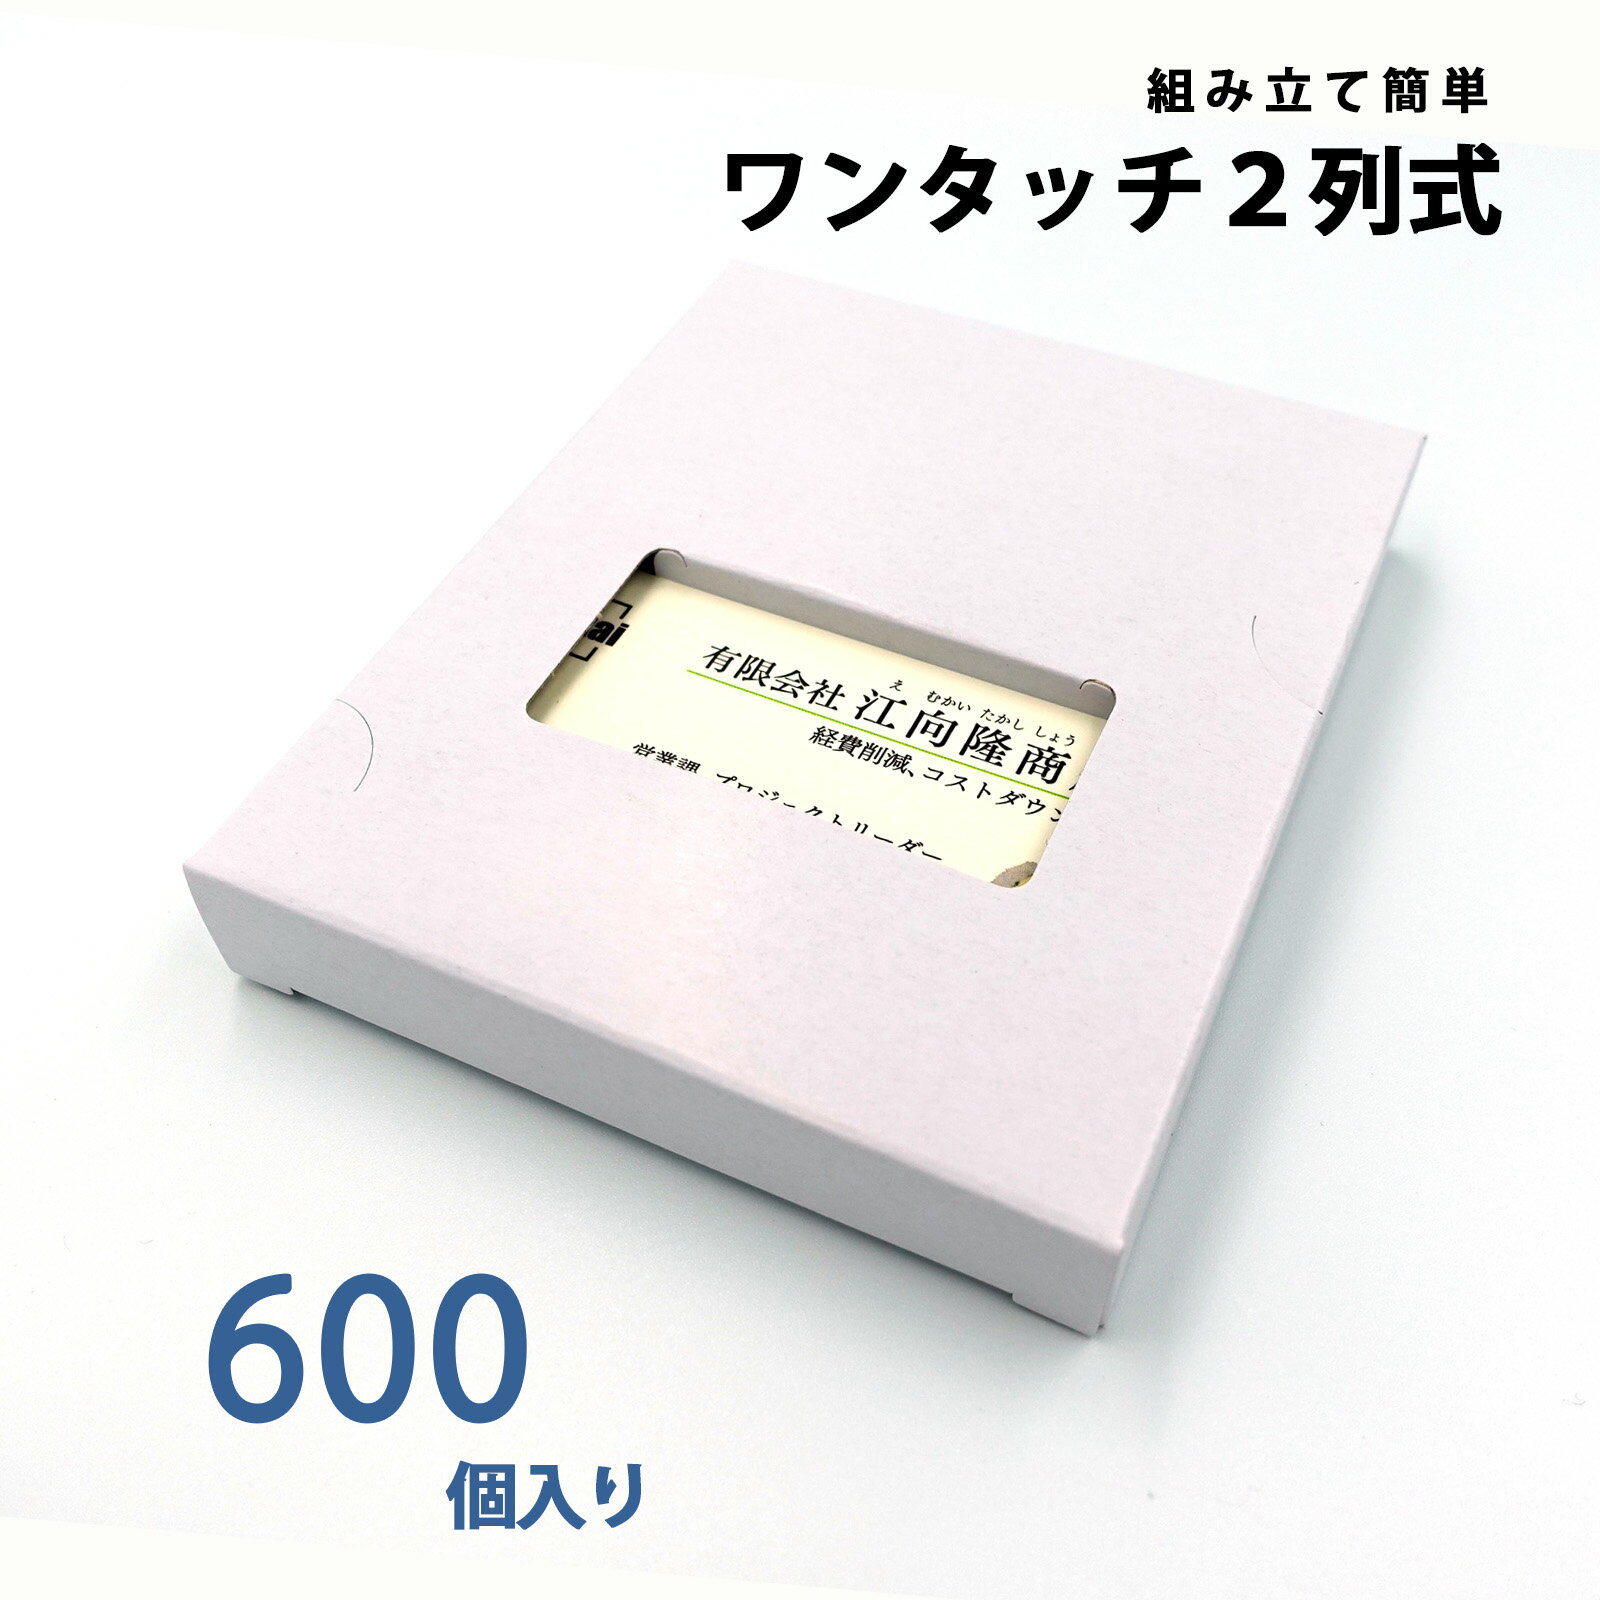 名刺ケース 紙製 名刺箱 メール便サイズ 100枚入る 窓あり 2列式一体型 600個入り 日本製 送料無料